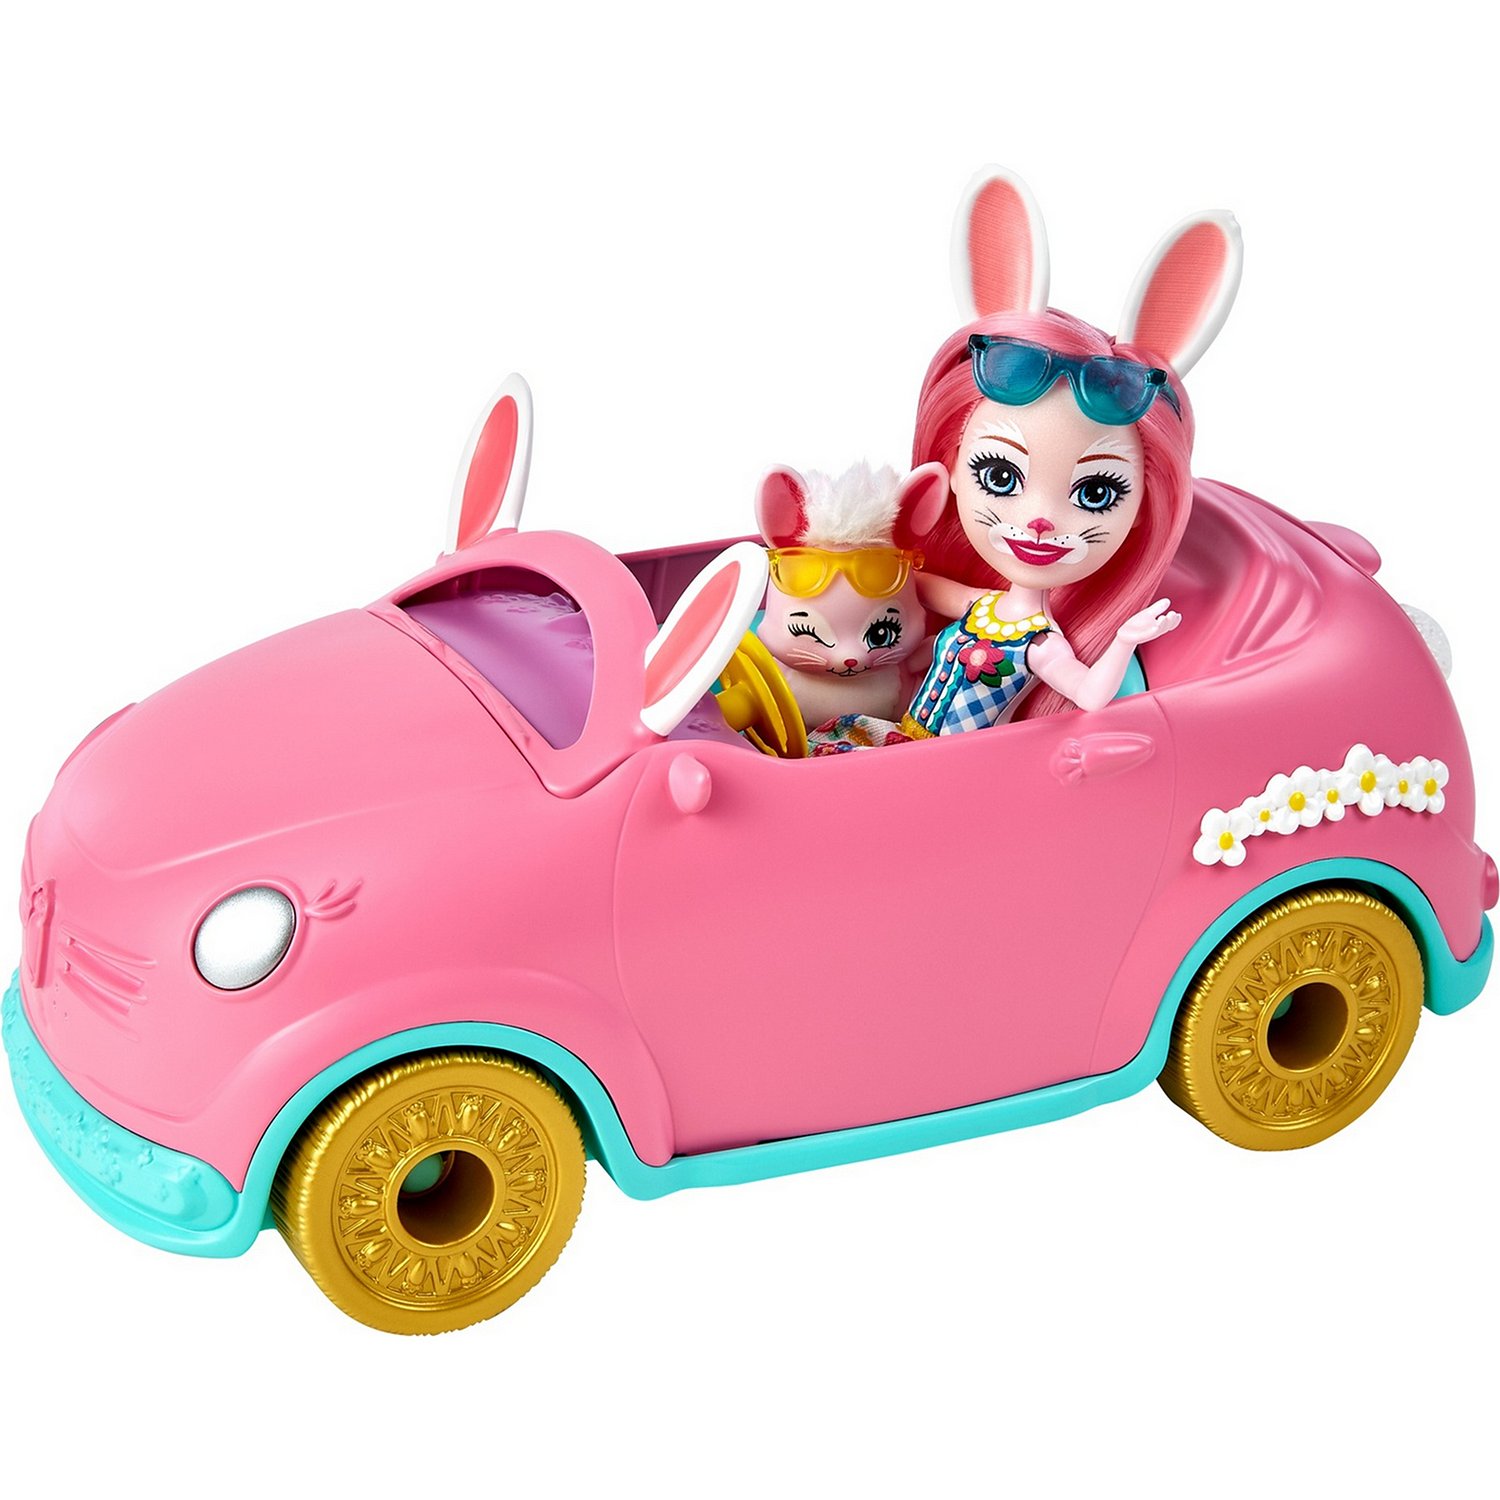 Набор Enchantimals HCF85 Автомобиль Бри Кроли с куклой и аксессуарами